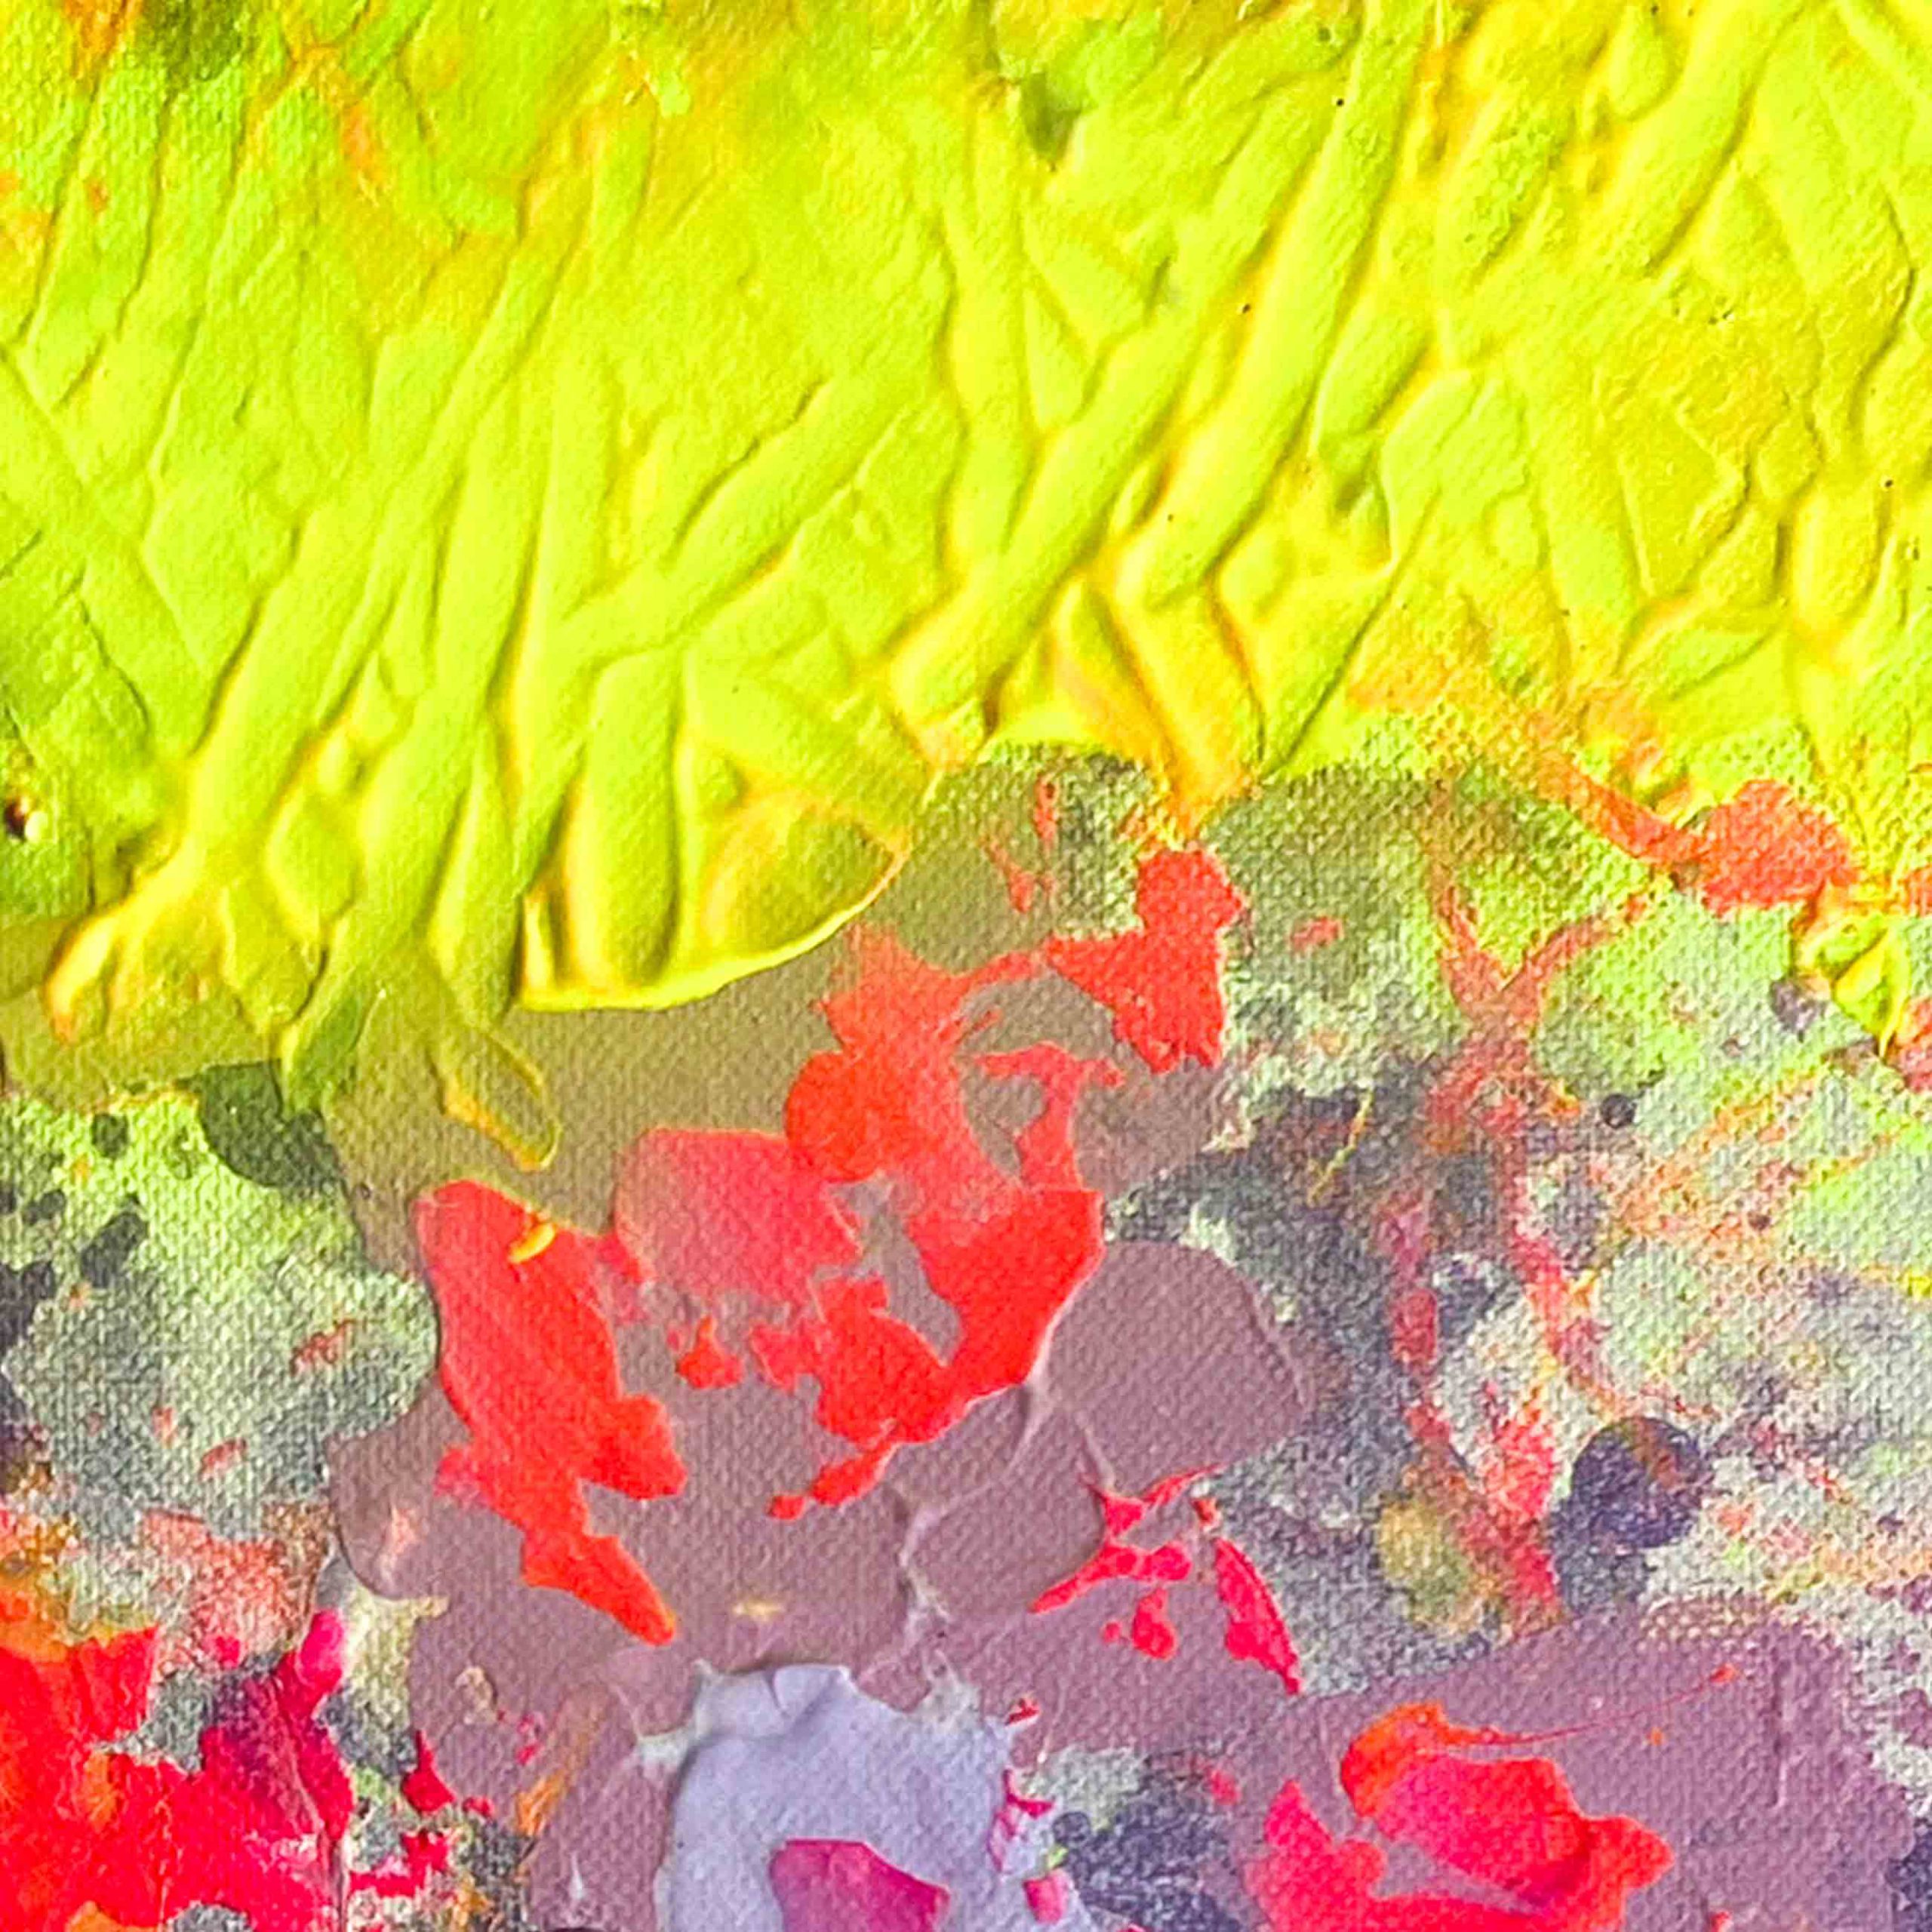 Detailansicht: Abstraktes Leinwandbild ON THE DANCEFLOOR von Sophie Friederichs. Farbwelt: Neongelb, Neonpink, Lila und Orange